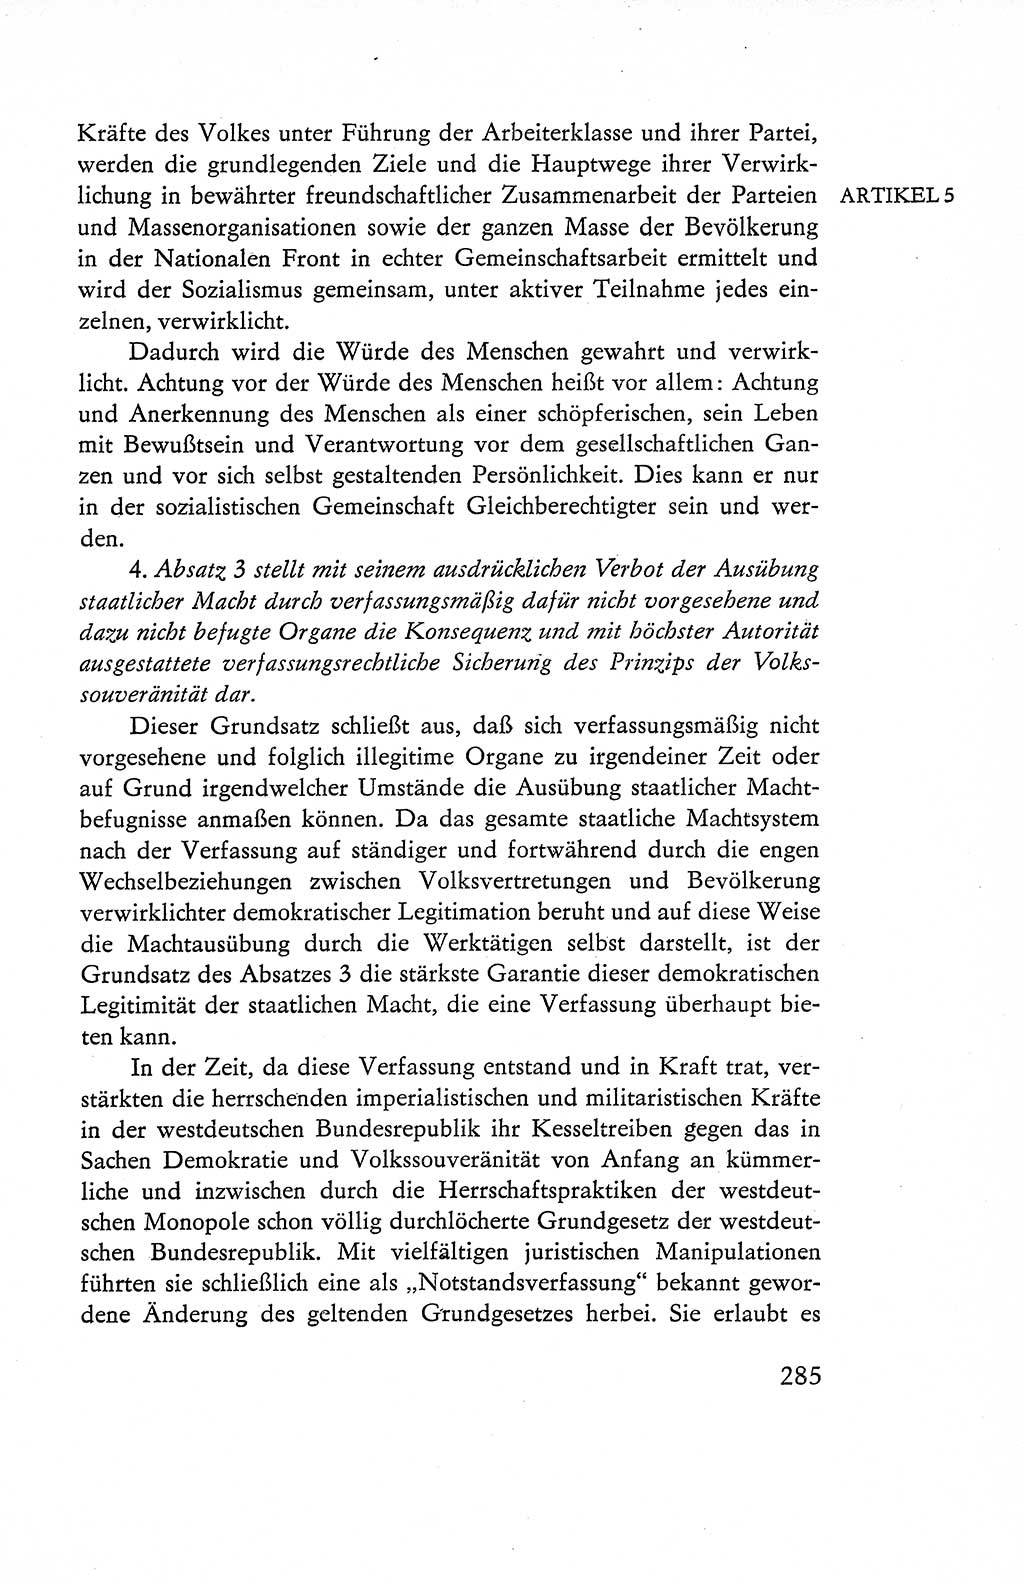 Verfassung der Deutschen Demokratischen Republik (DDR), Dokumente, Kommentar 1969, Band 1, Seite 285 (Verf. DDR Dok. Komm. 1969, Bd. 1, S. 285)